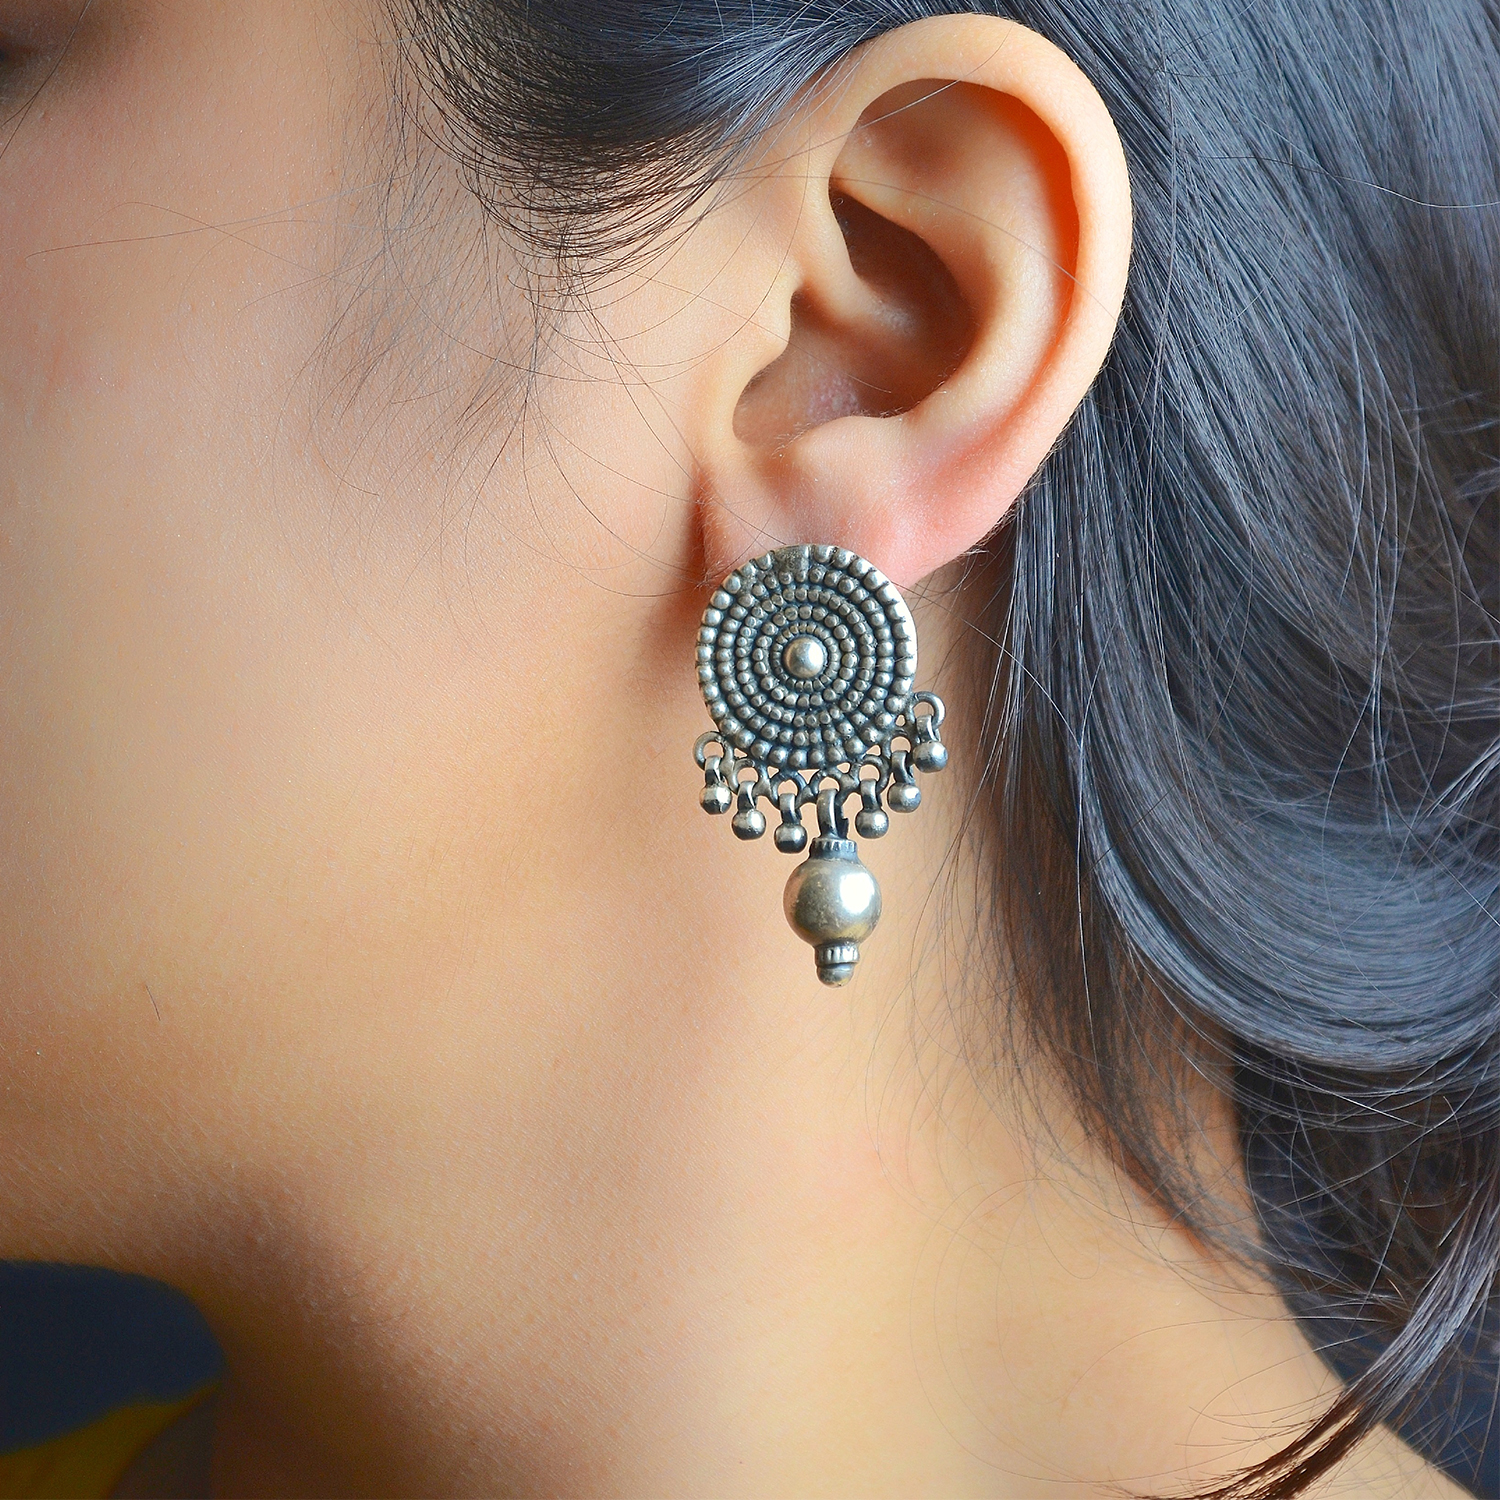 Huge 3 Carat Designer Diamond Stud Earrings For Women Cluster Flower Design  803070